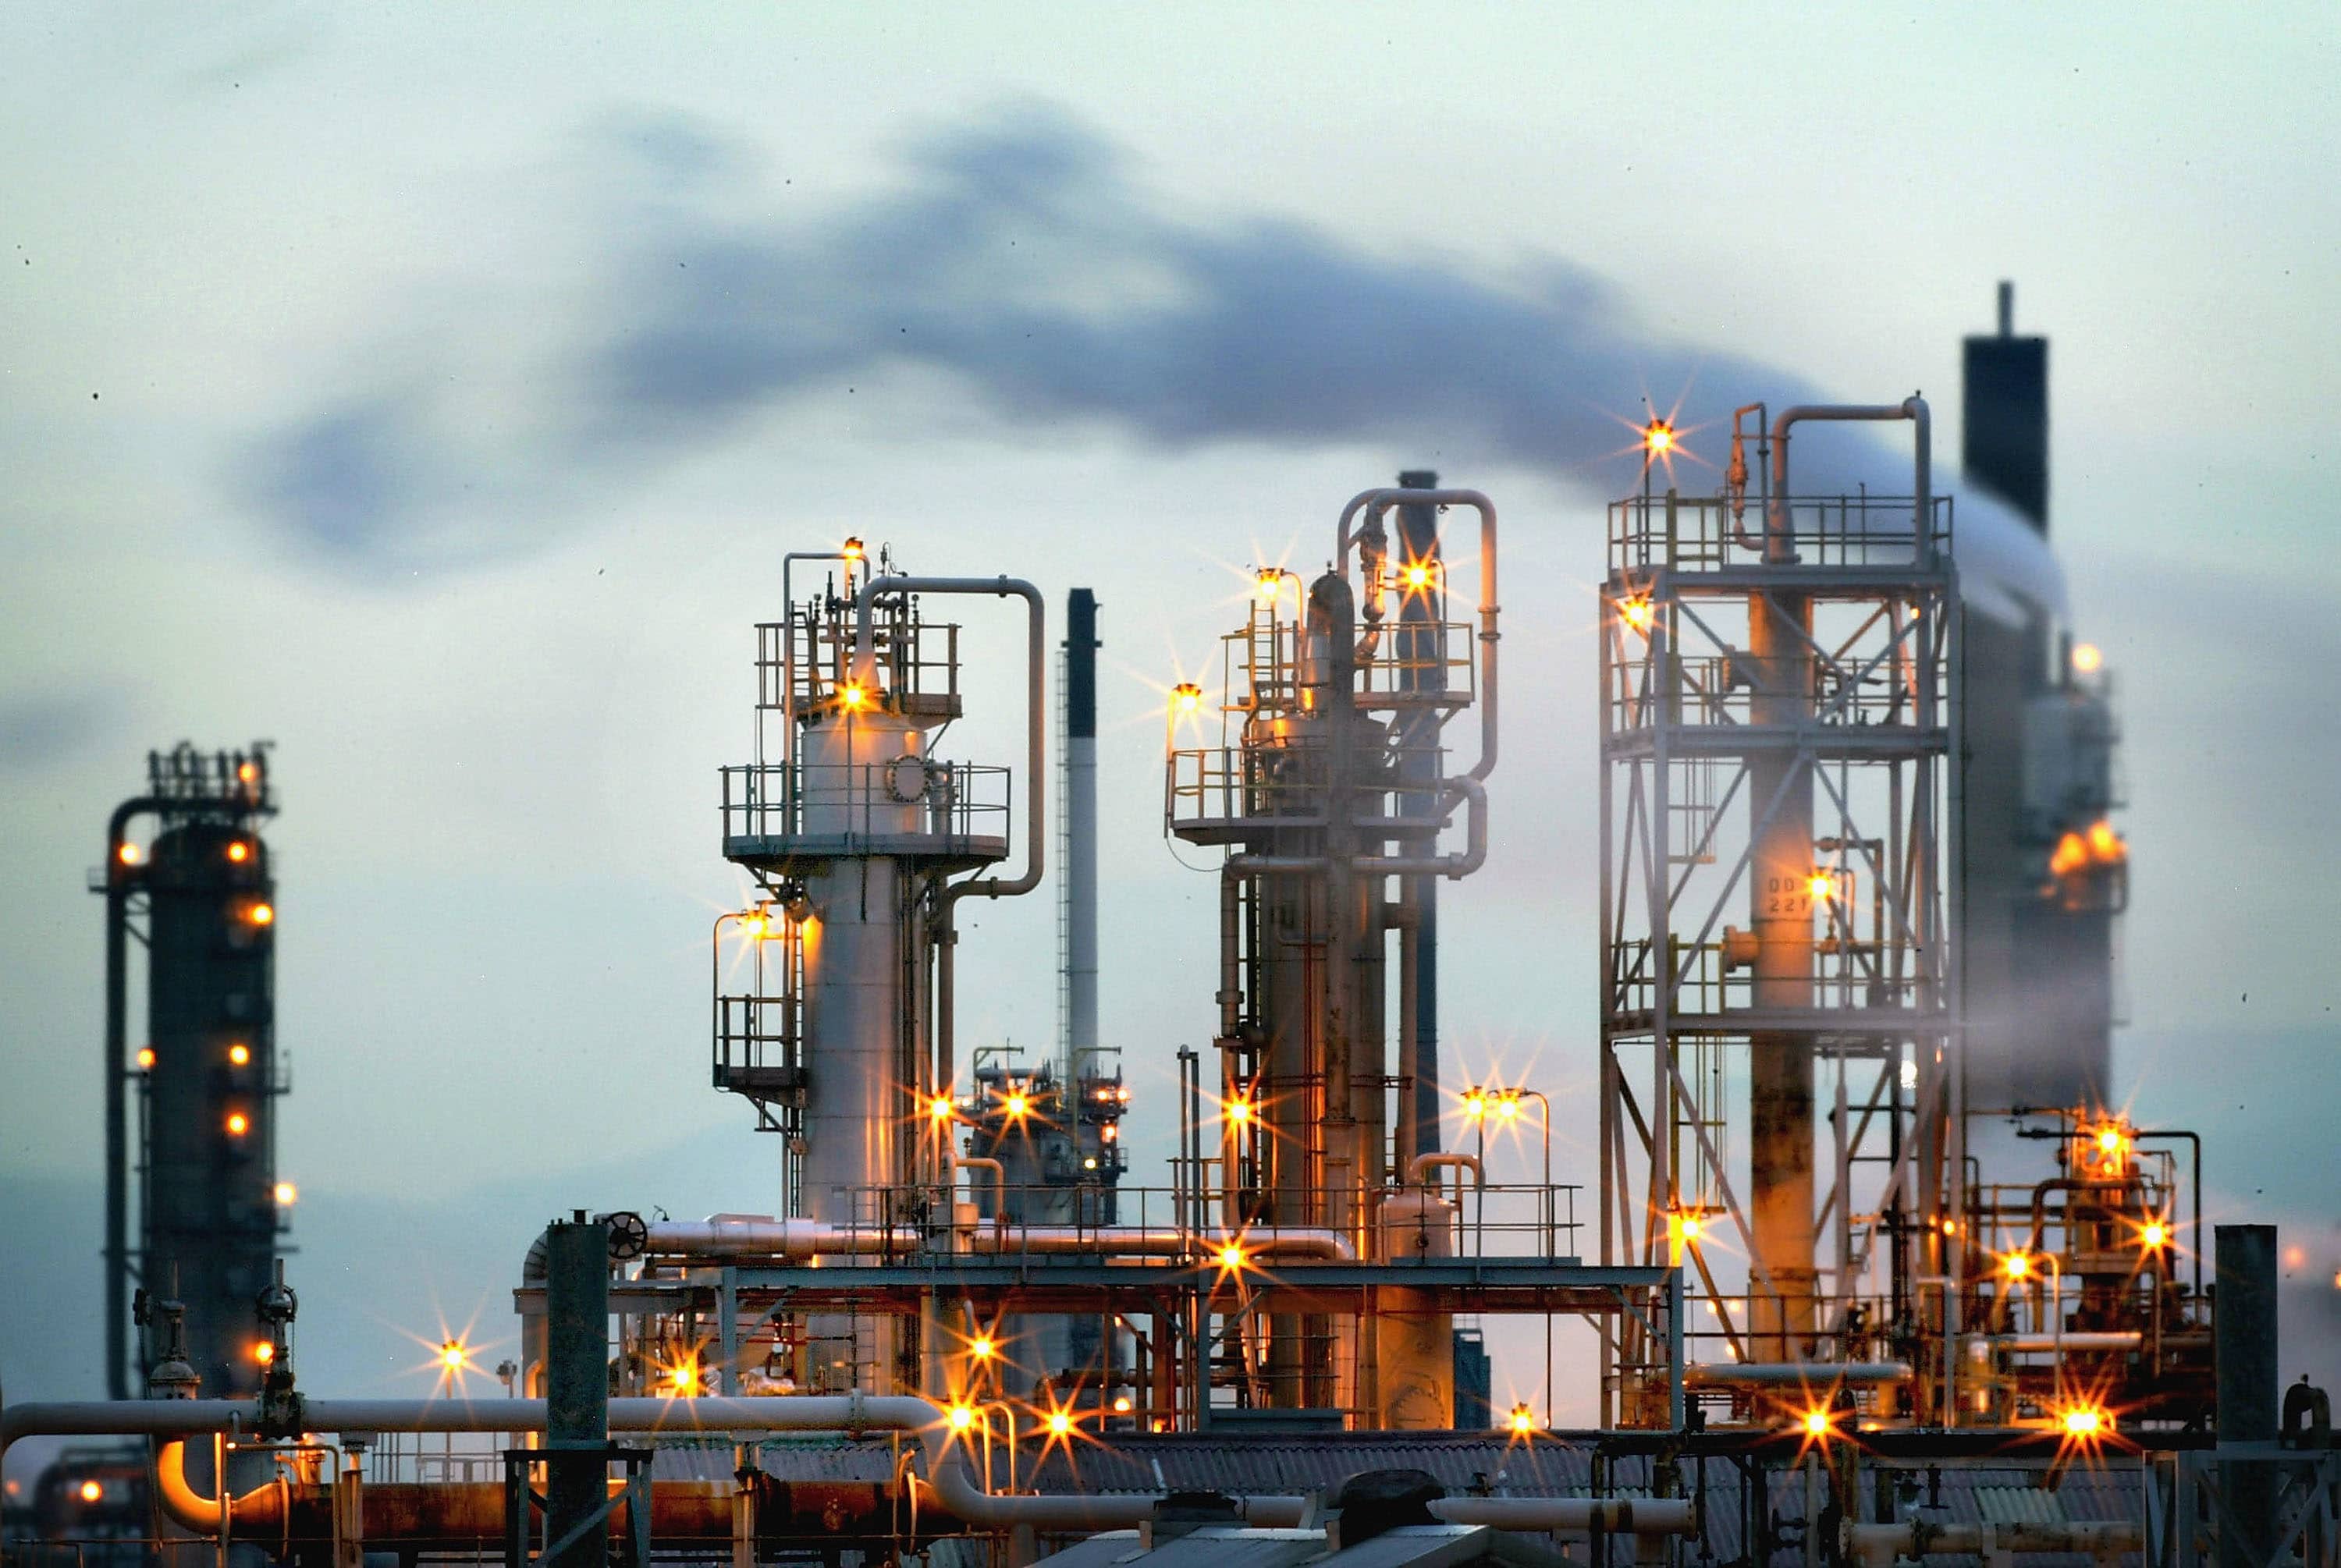 Petrol Piyasaları Artan Taleple “Ciddi Sorunlarla” Karşılaşacak: IEF